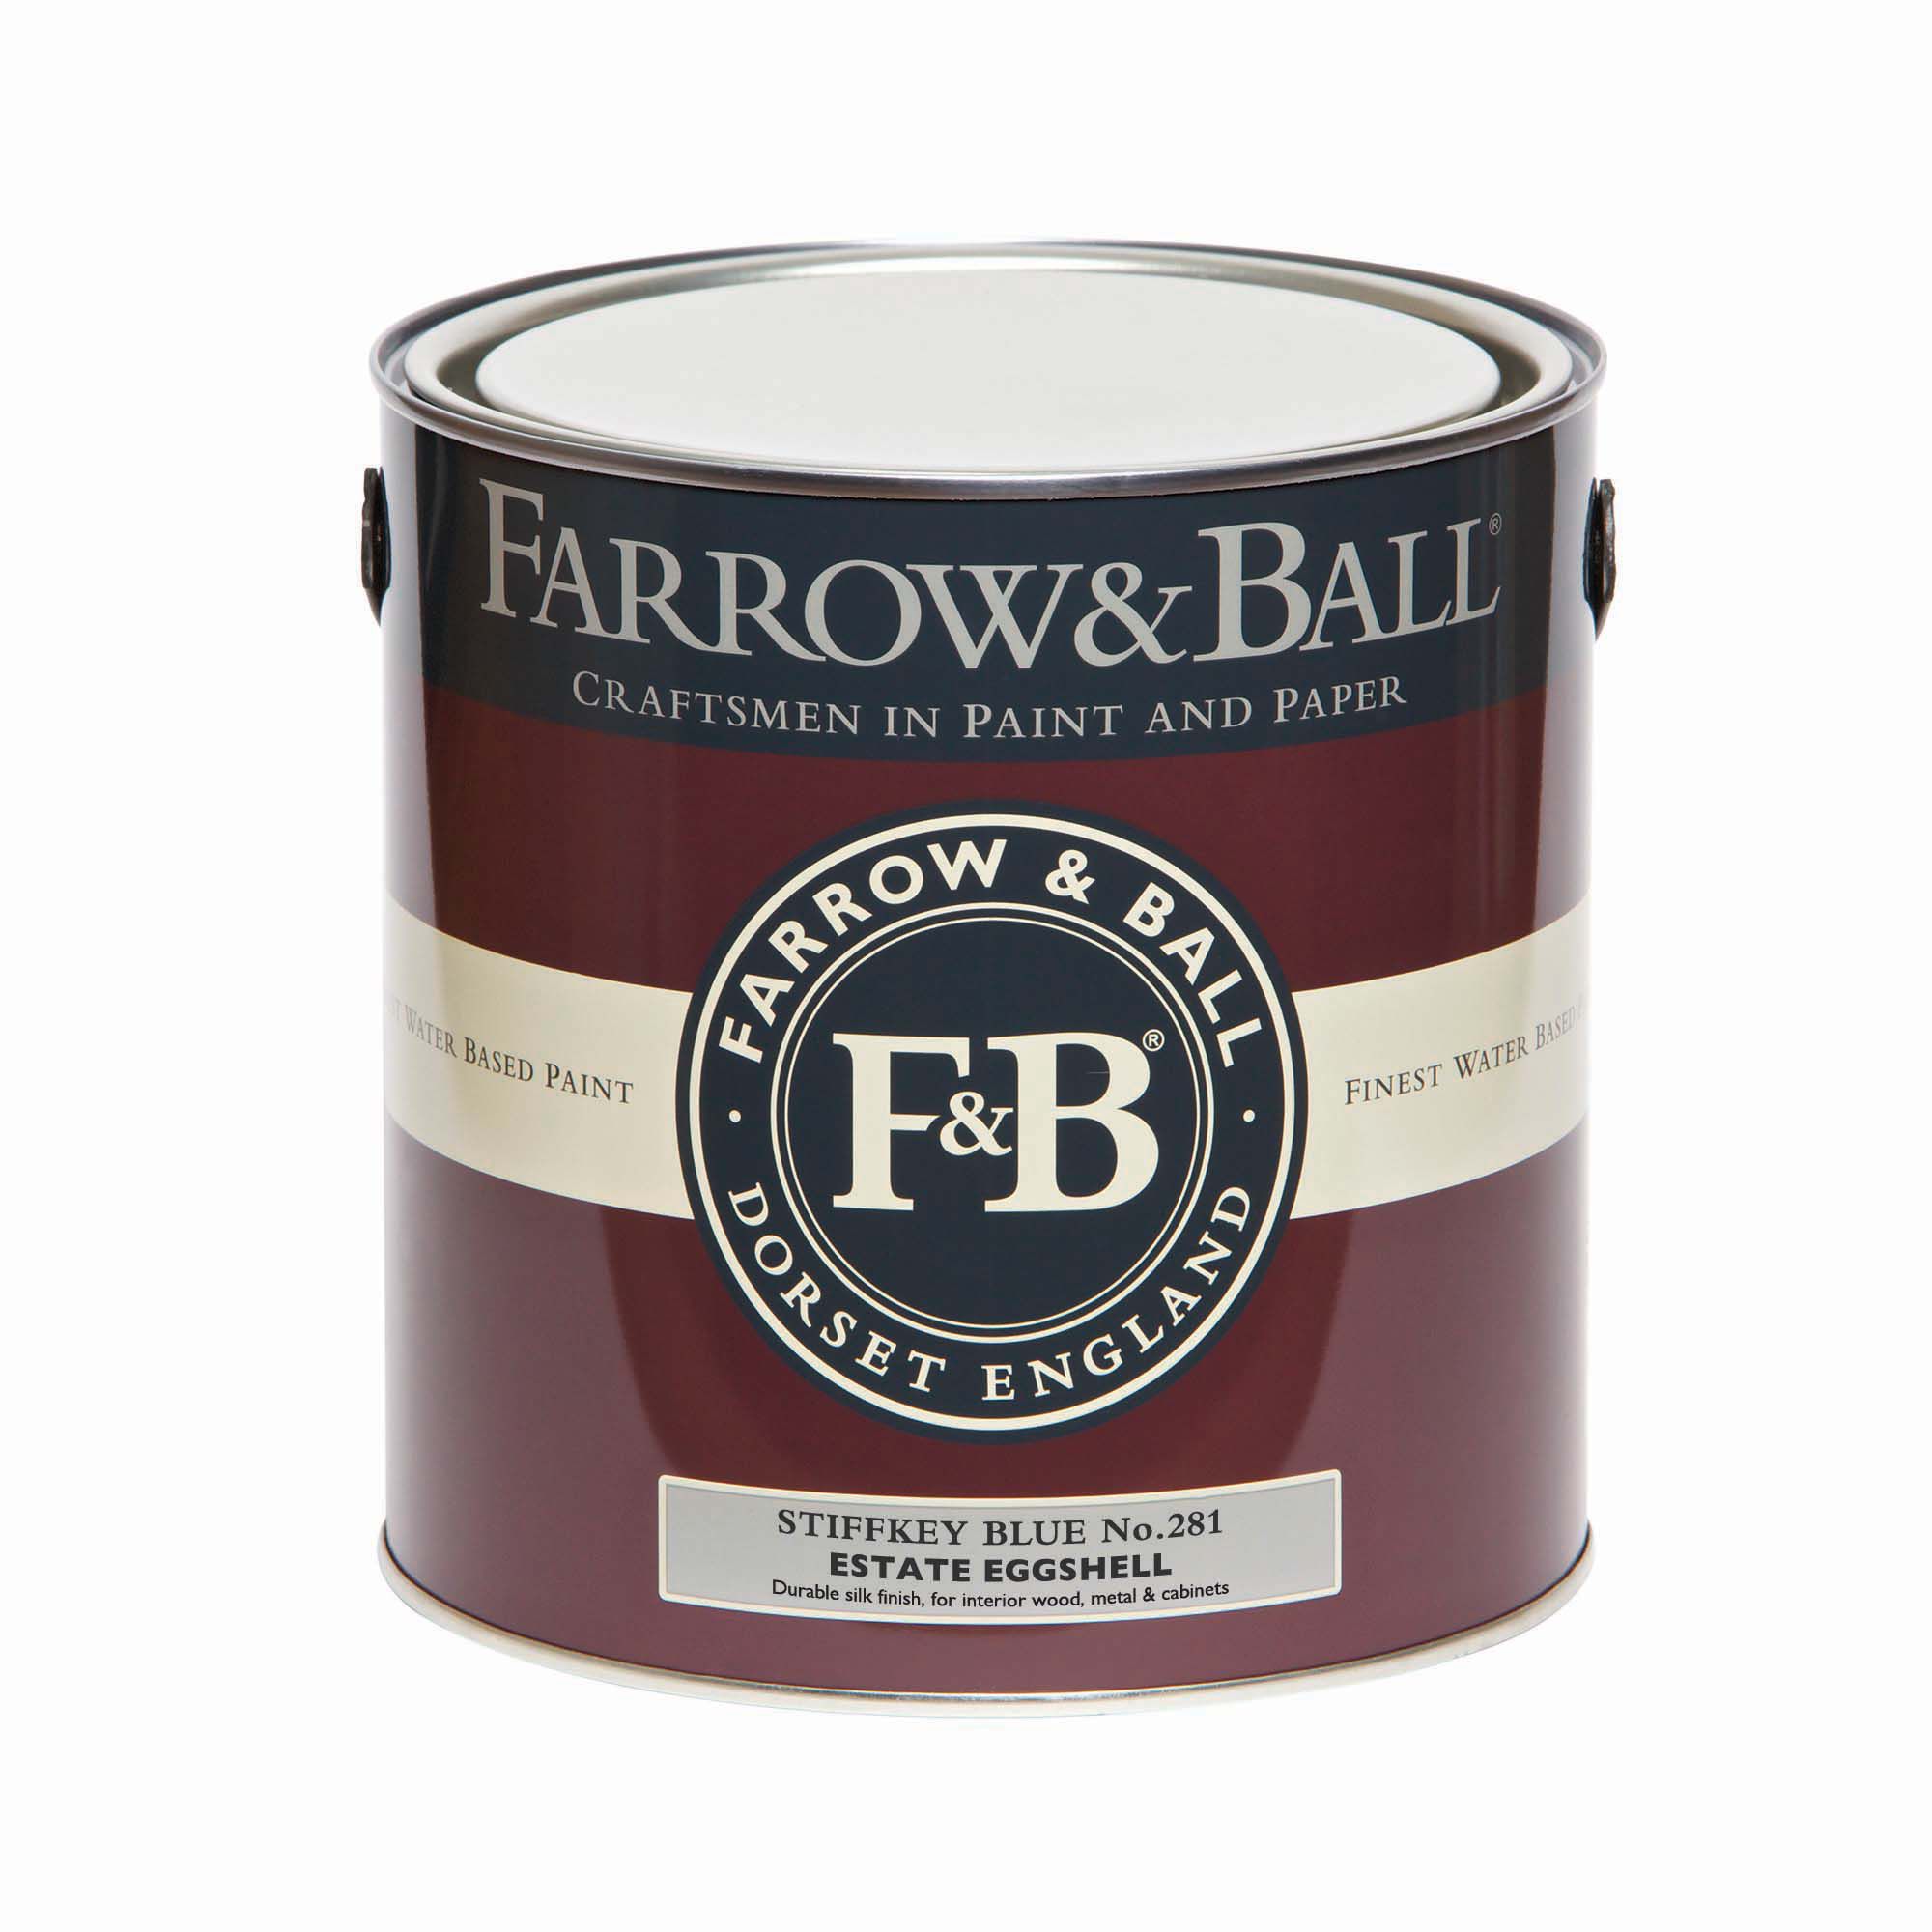 Farrow & Ball Estate Stiffkey Blue No.281 Eggshell Paint, 2.5L